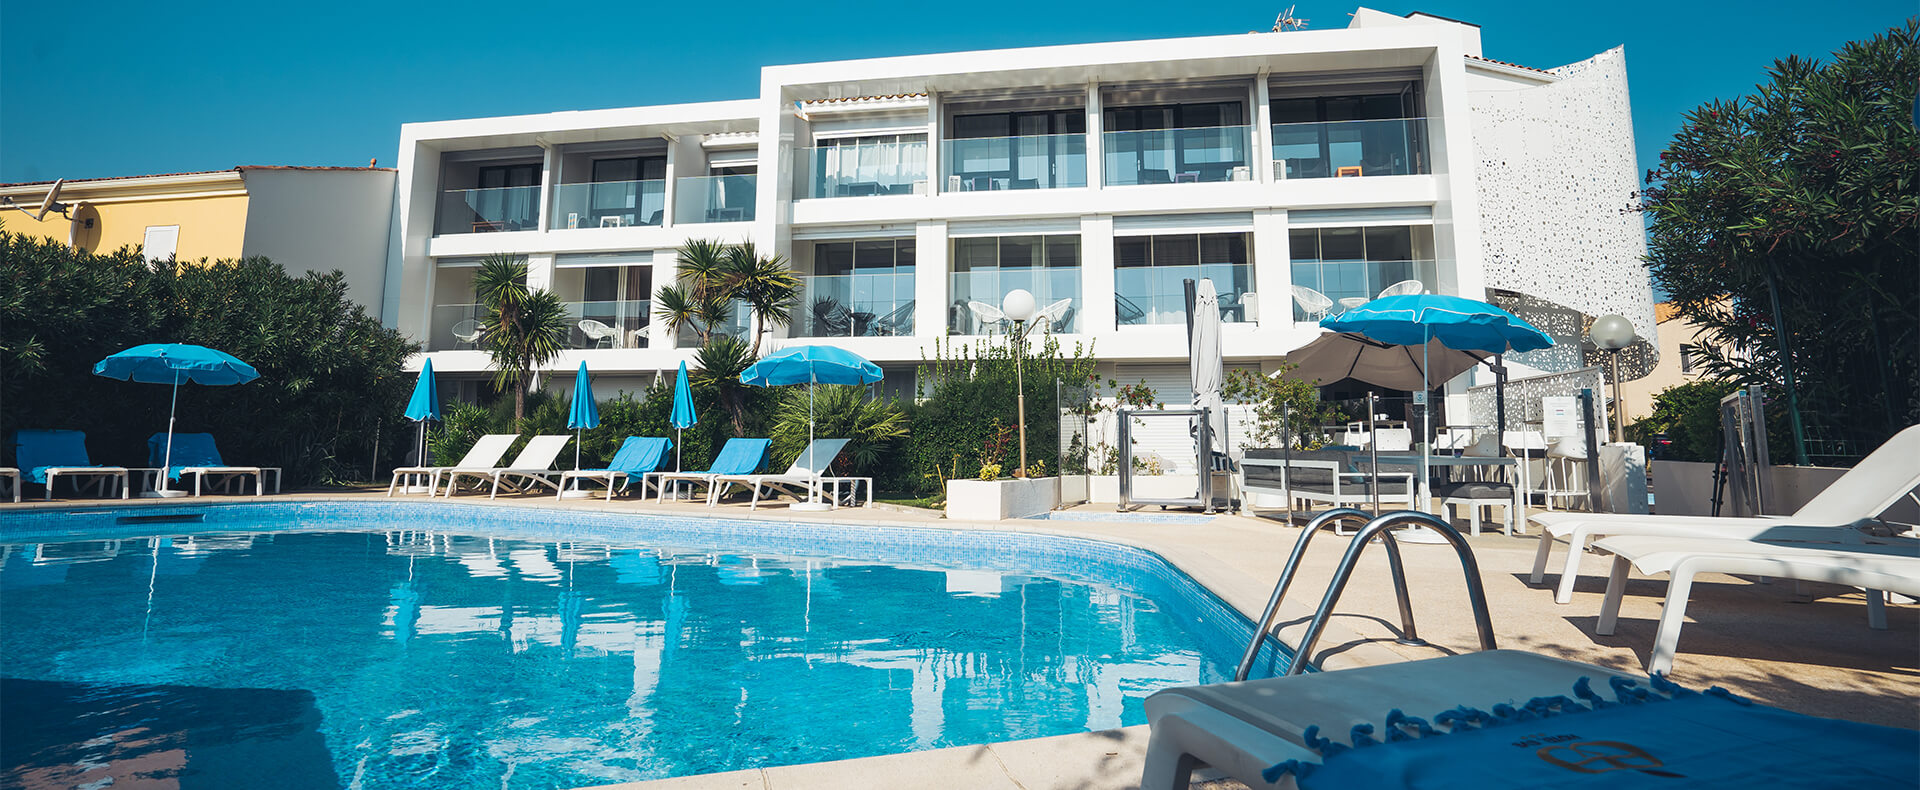 Schwimmbad Hotel Eve, Hotel FKK am Cap d 'Agde